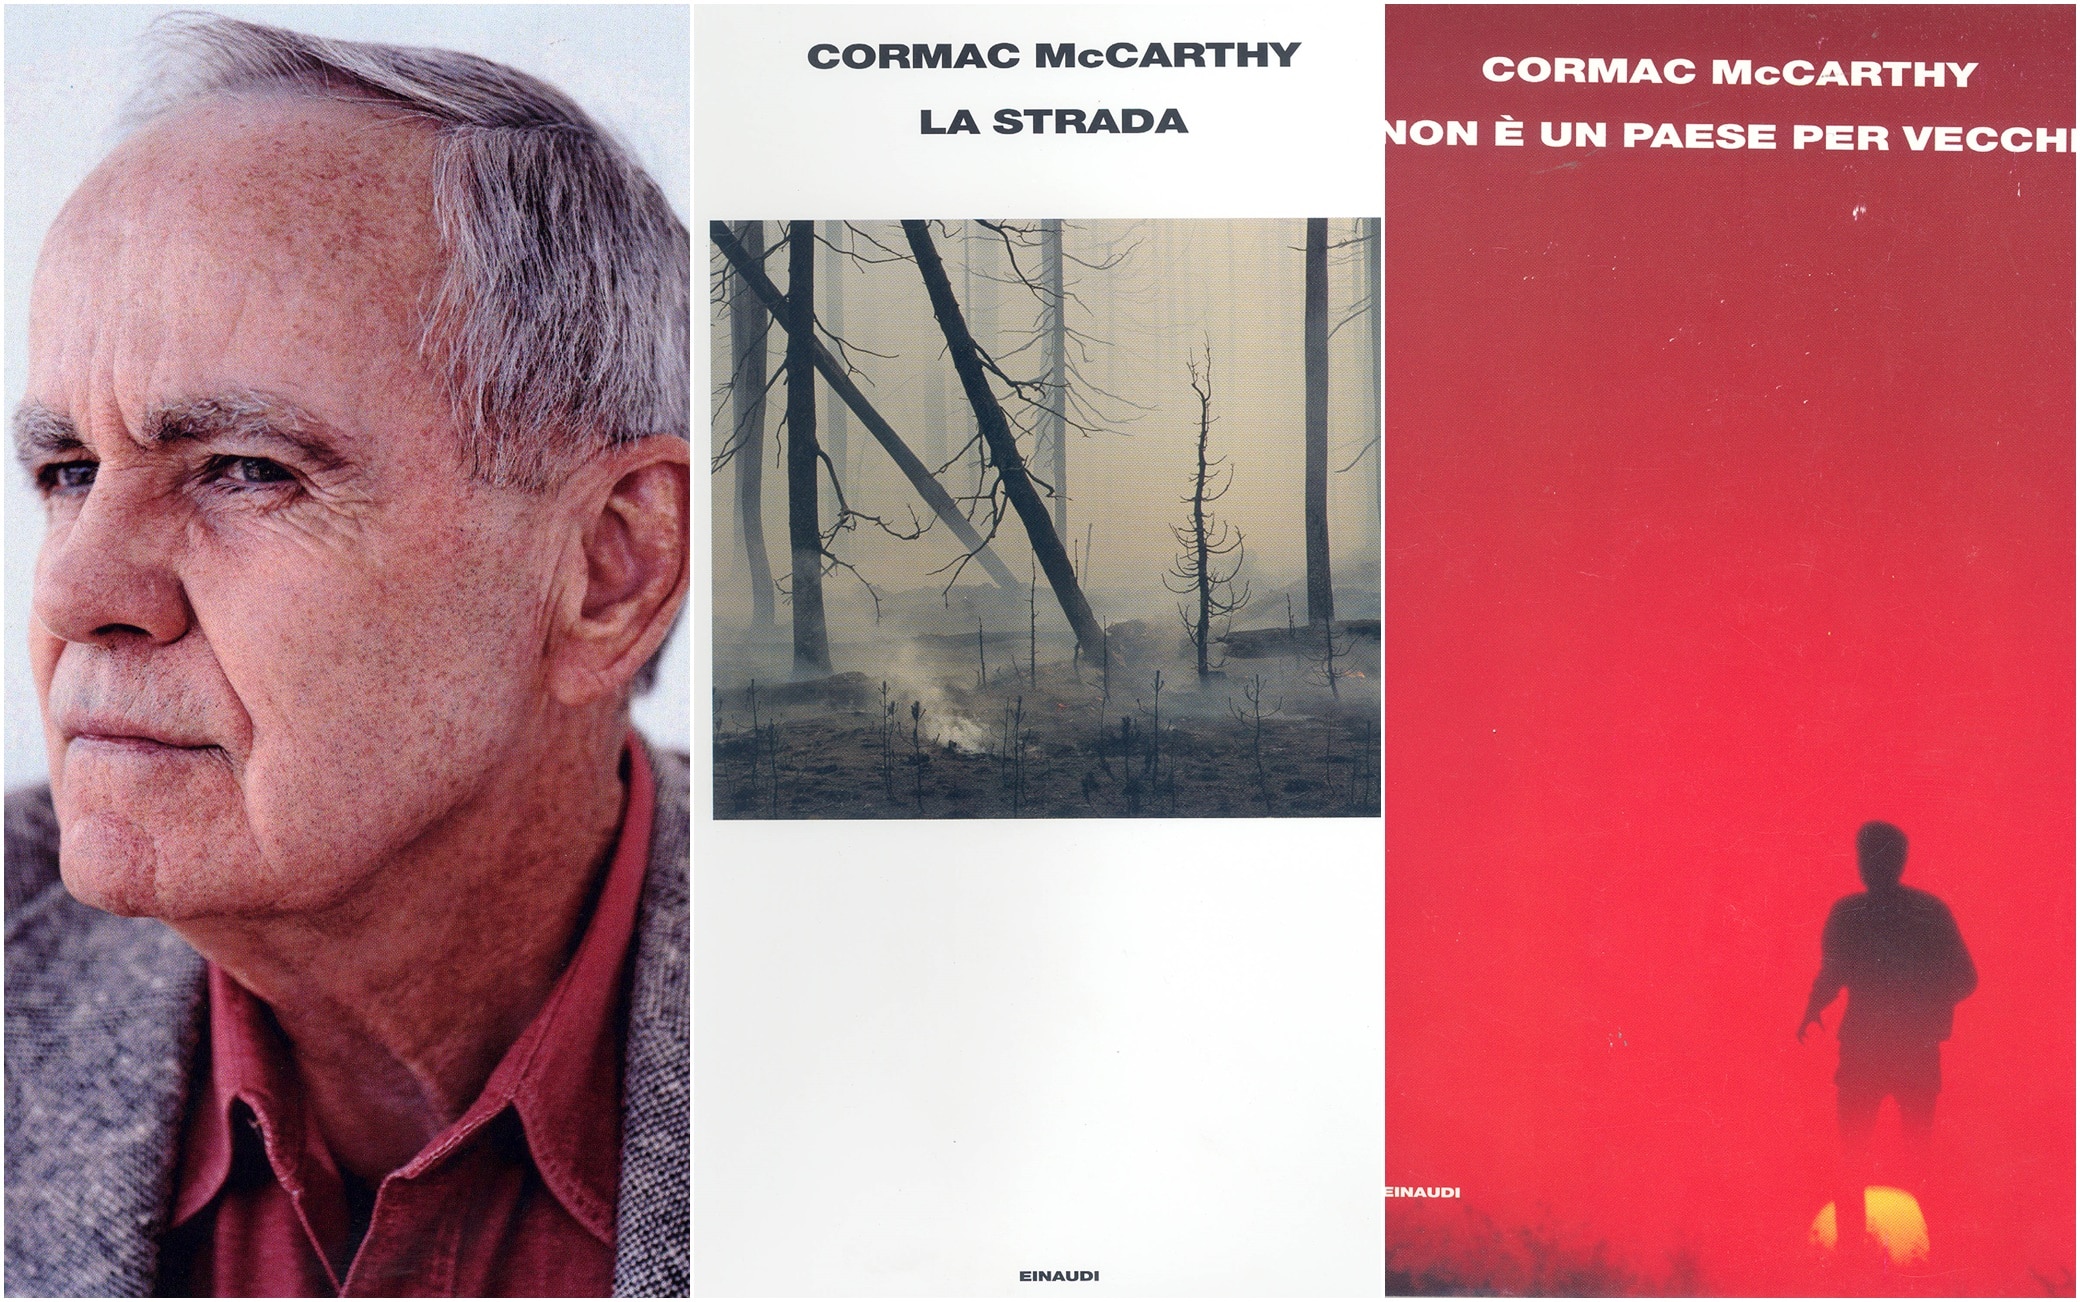 È morto Cormac McCarthy, lo scrittore americano aveva 89 anni